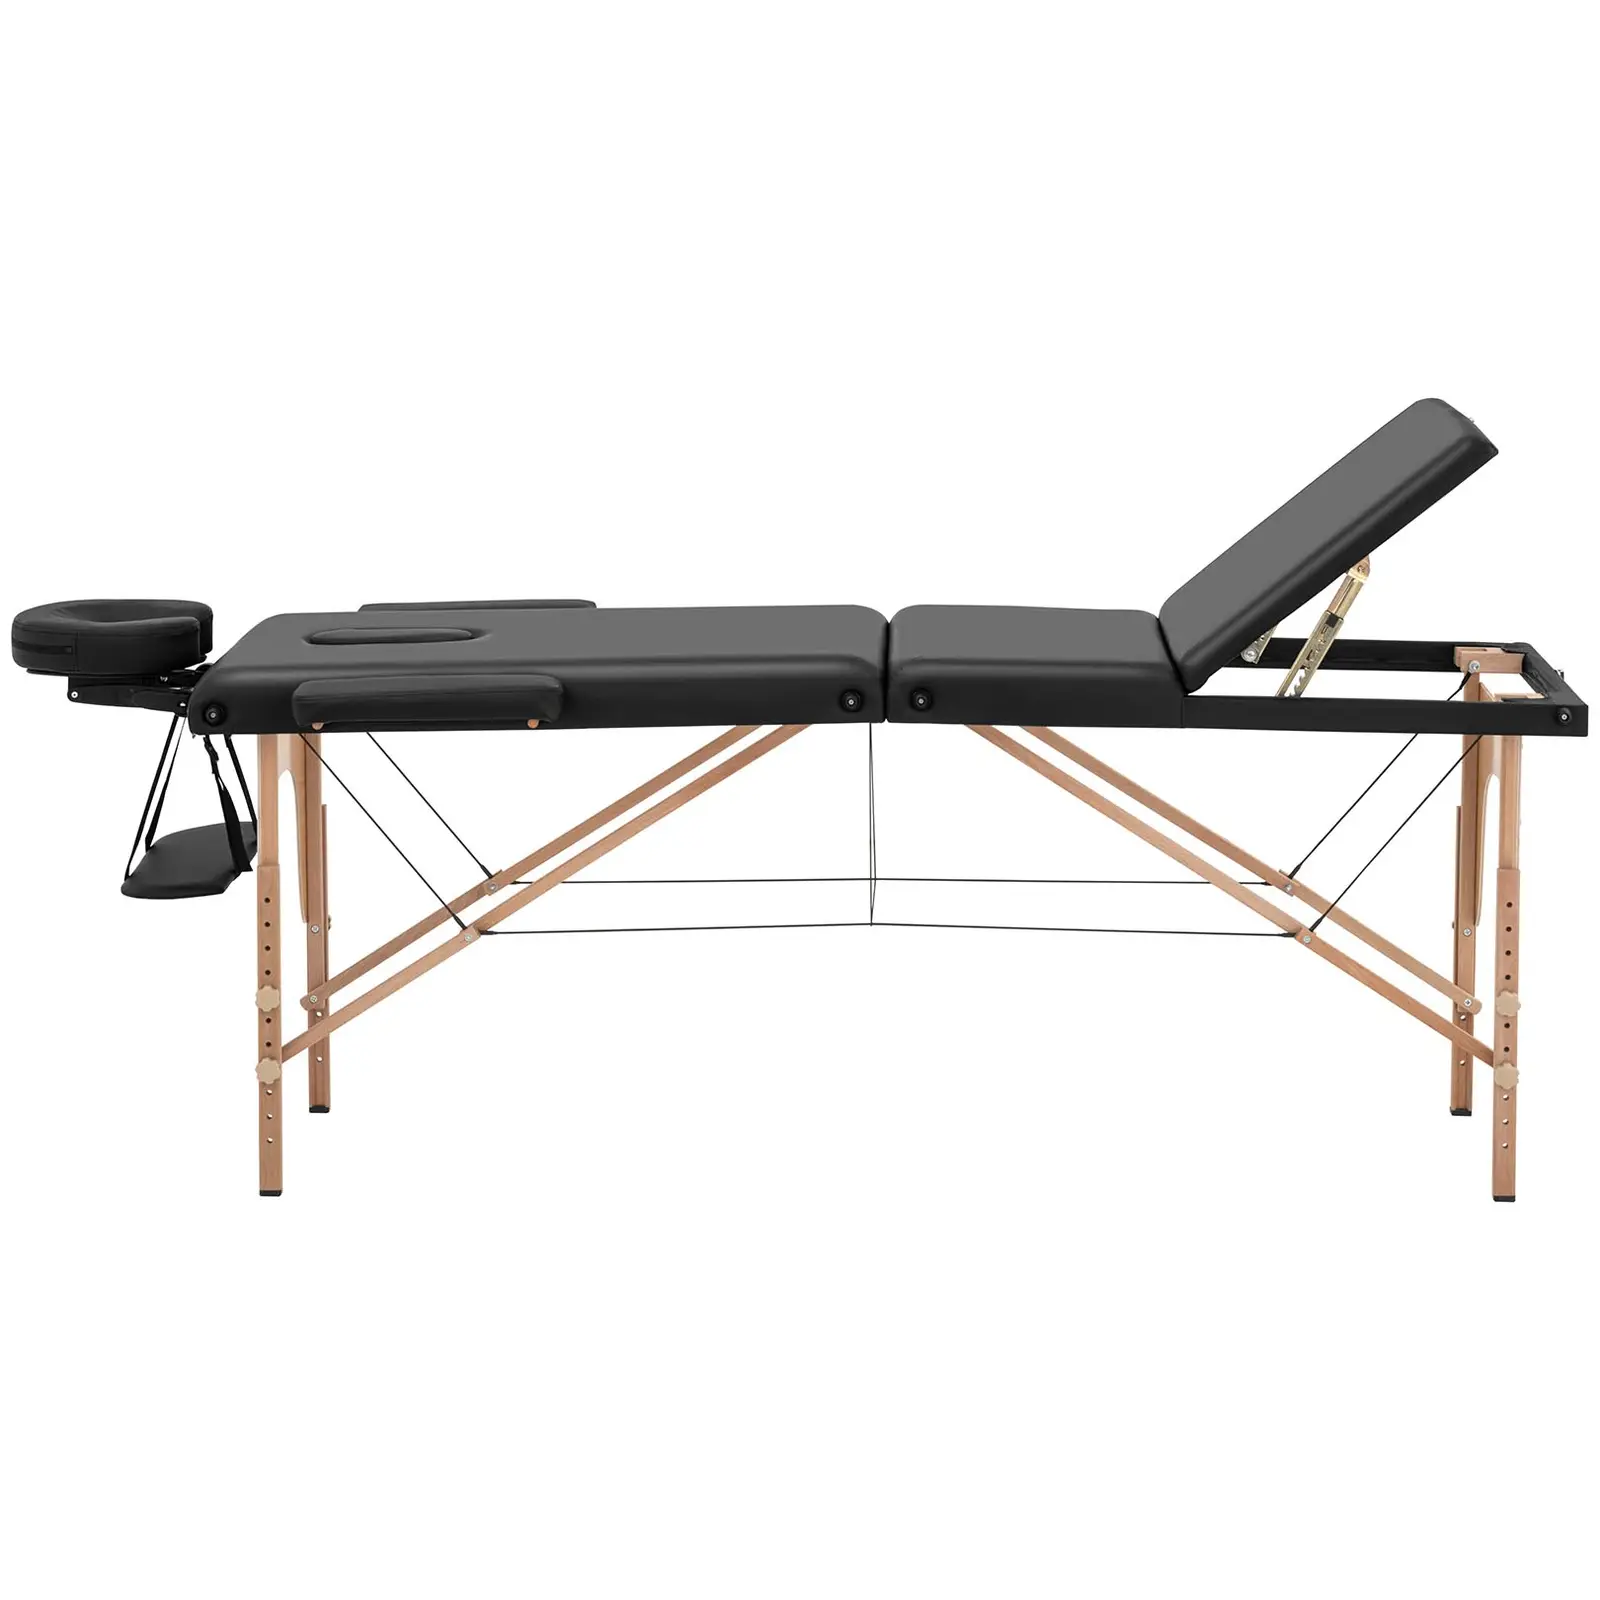 Łóżko do masażu składane - bardzo szerokie (70 cm) - odchylany podnóżek - drewno bukowe - czarne